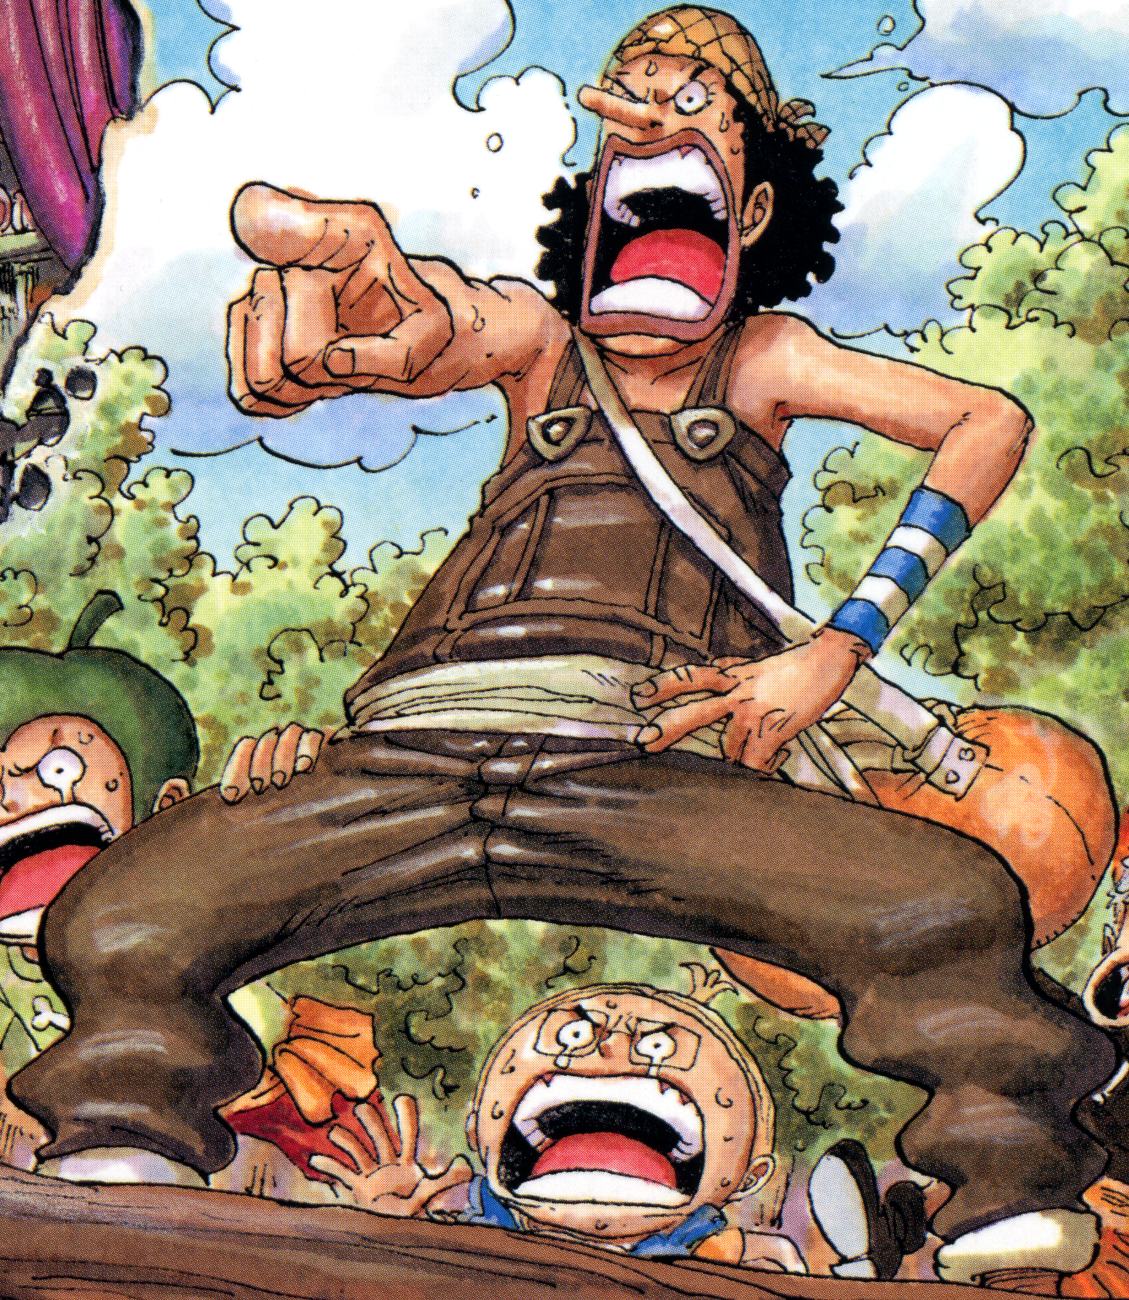 One Piece Chapter 1058 (leaked): Twitter in turmoil over Mihawk's new bounty